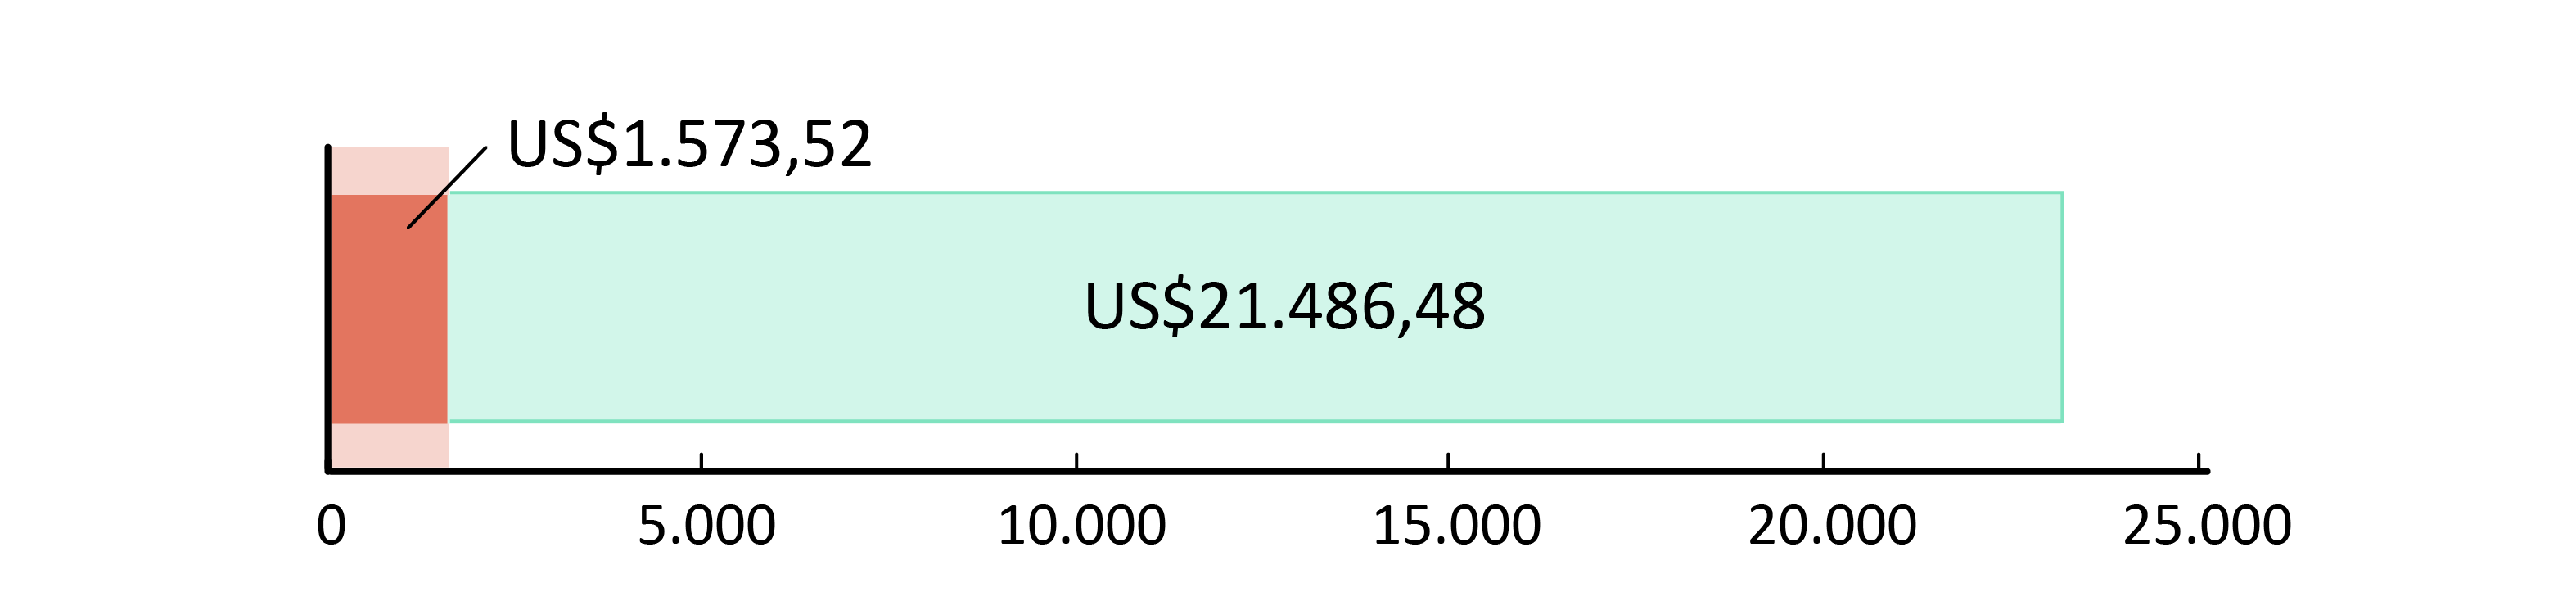 US$ 1.573,52 fueron usados; US$21.486,48 restan